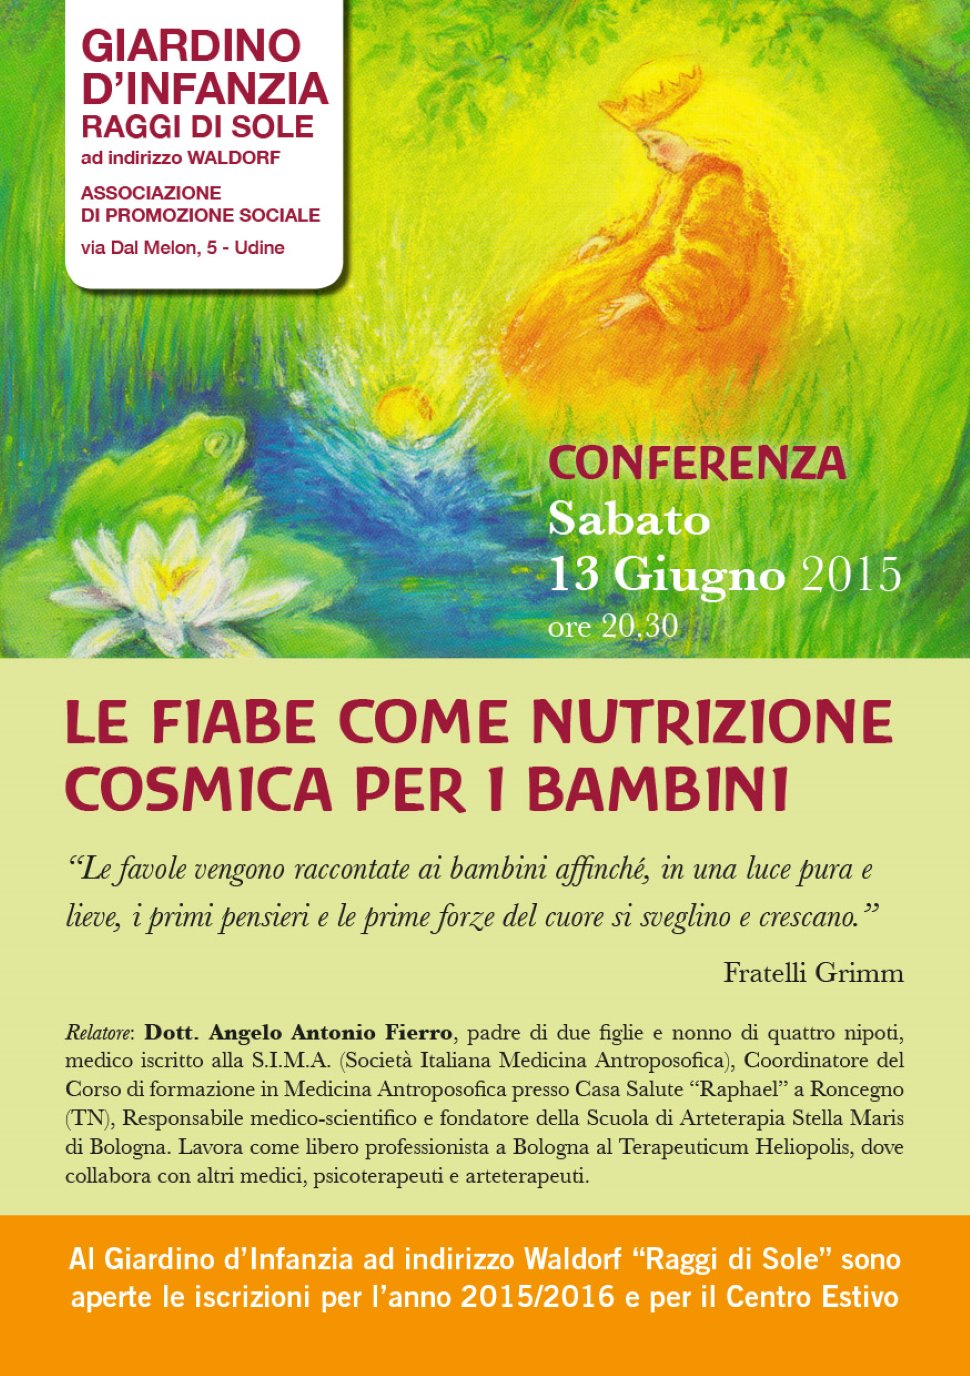 Conferenza "LE FIABE COME NUTRIZIONE COSMICA PER I BAMBINI"